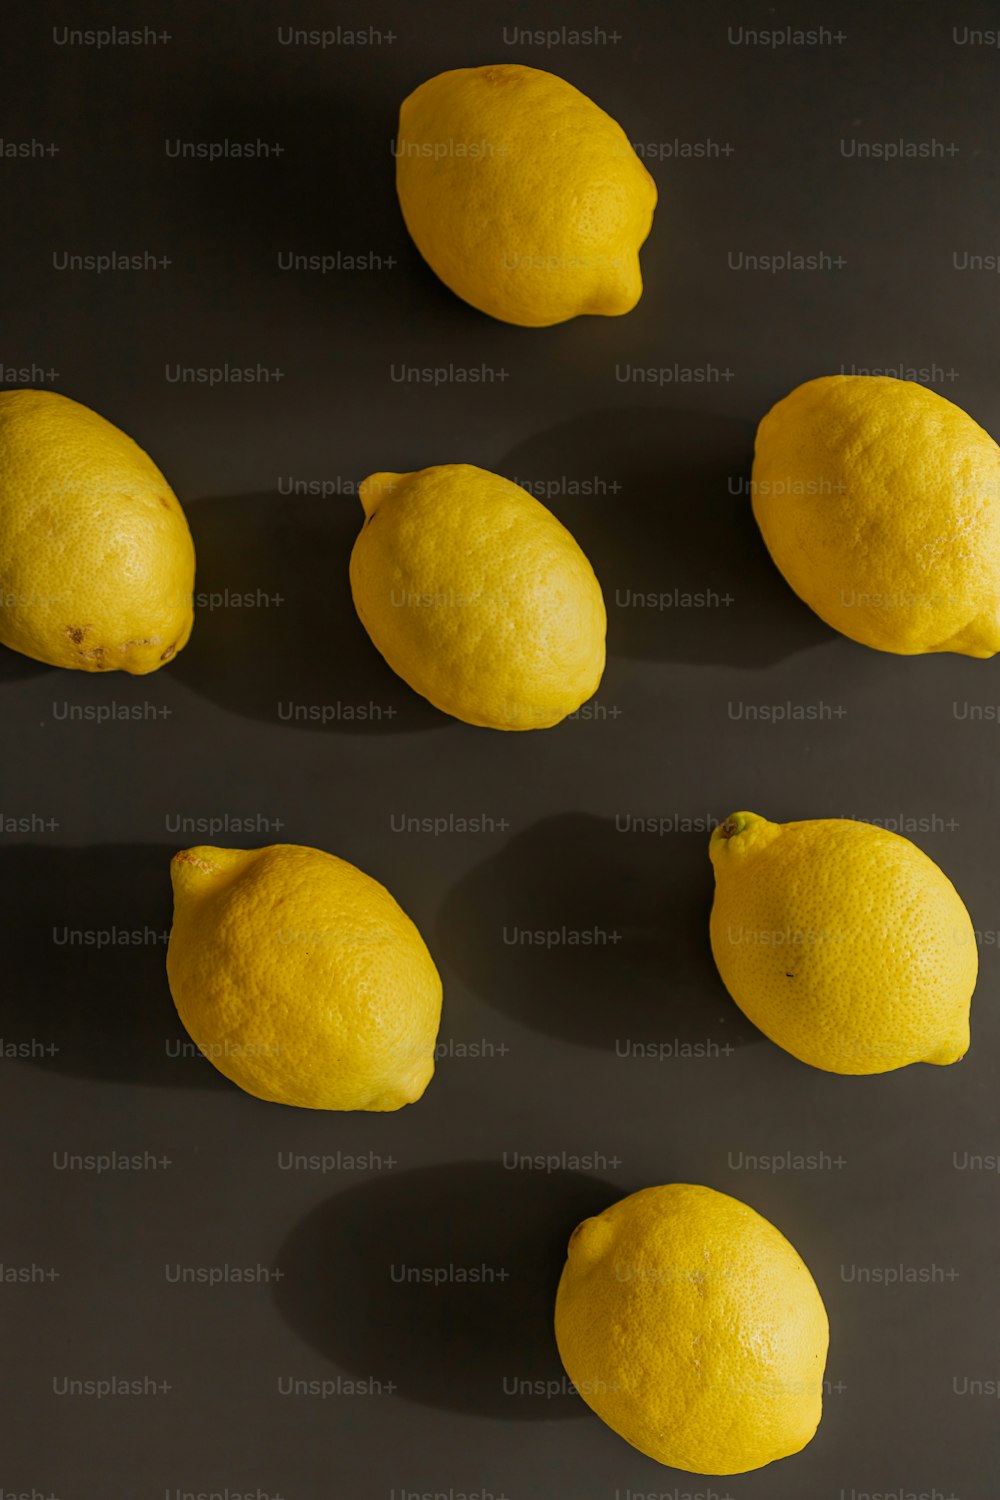 테이블 위에 앉아 있는 레몬 한 무리